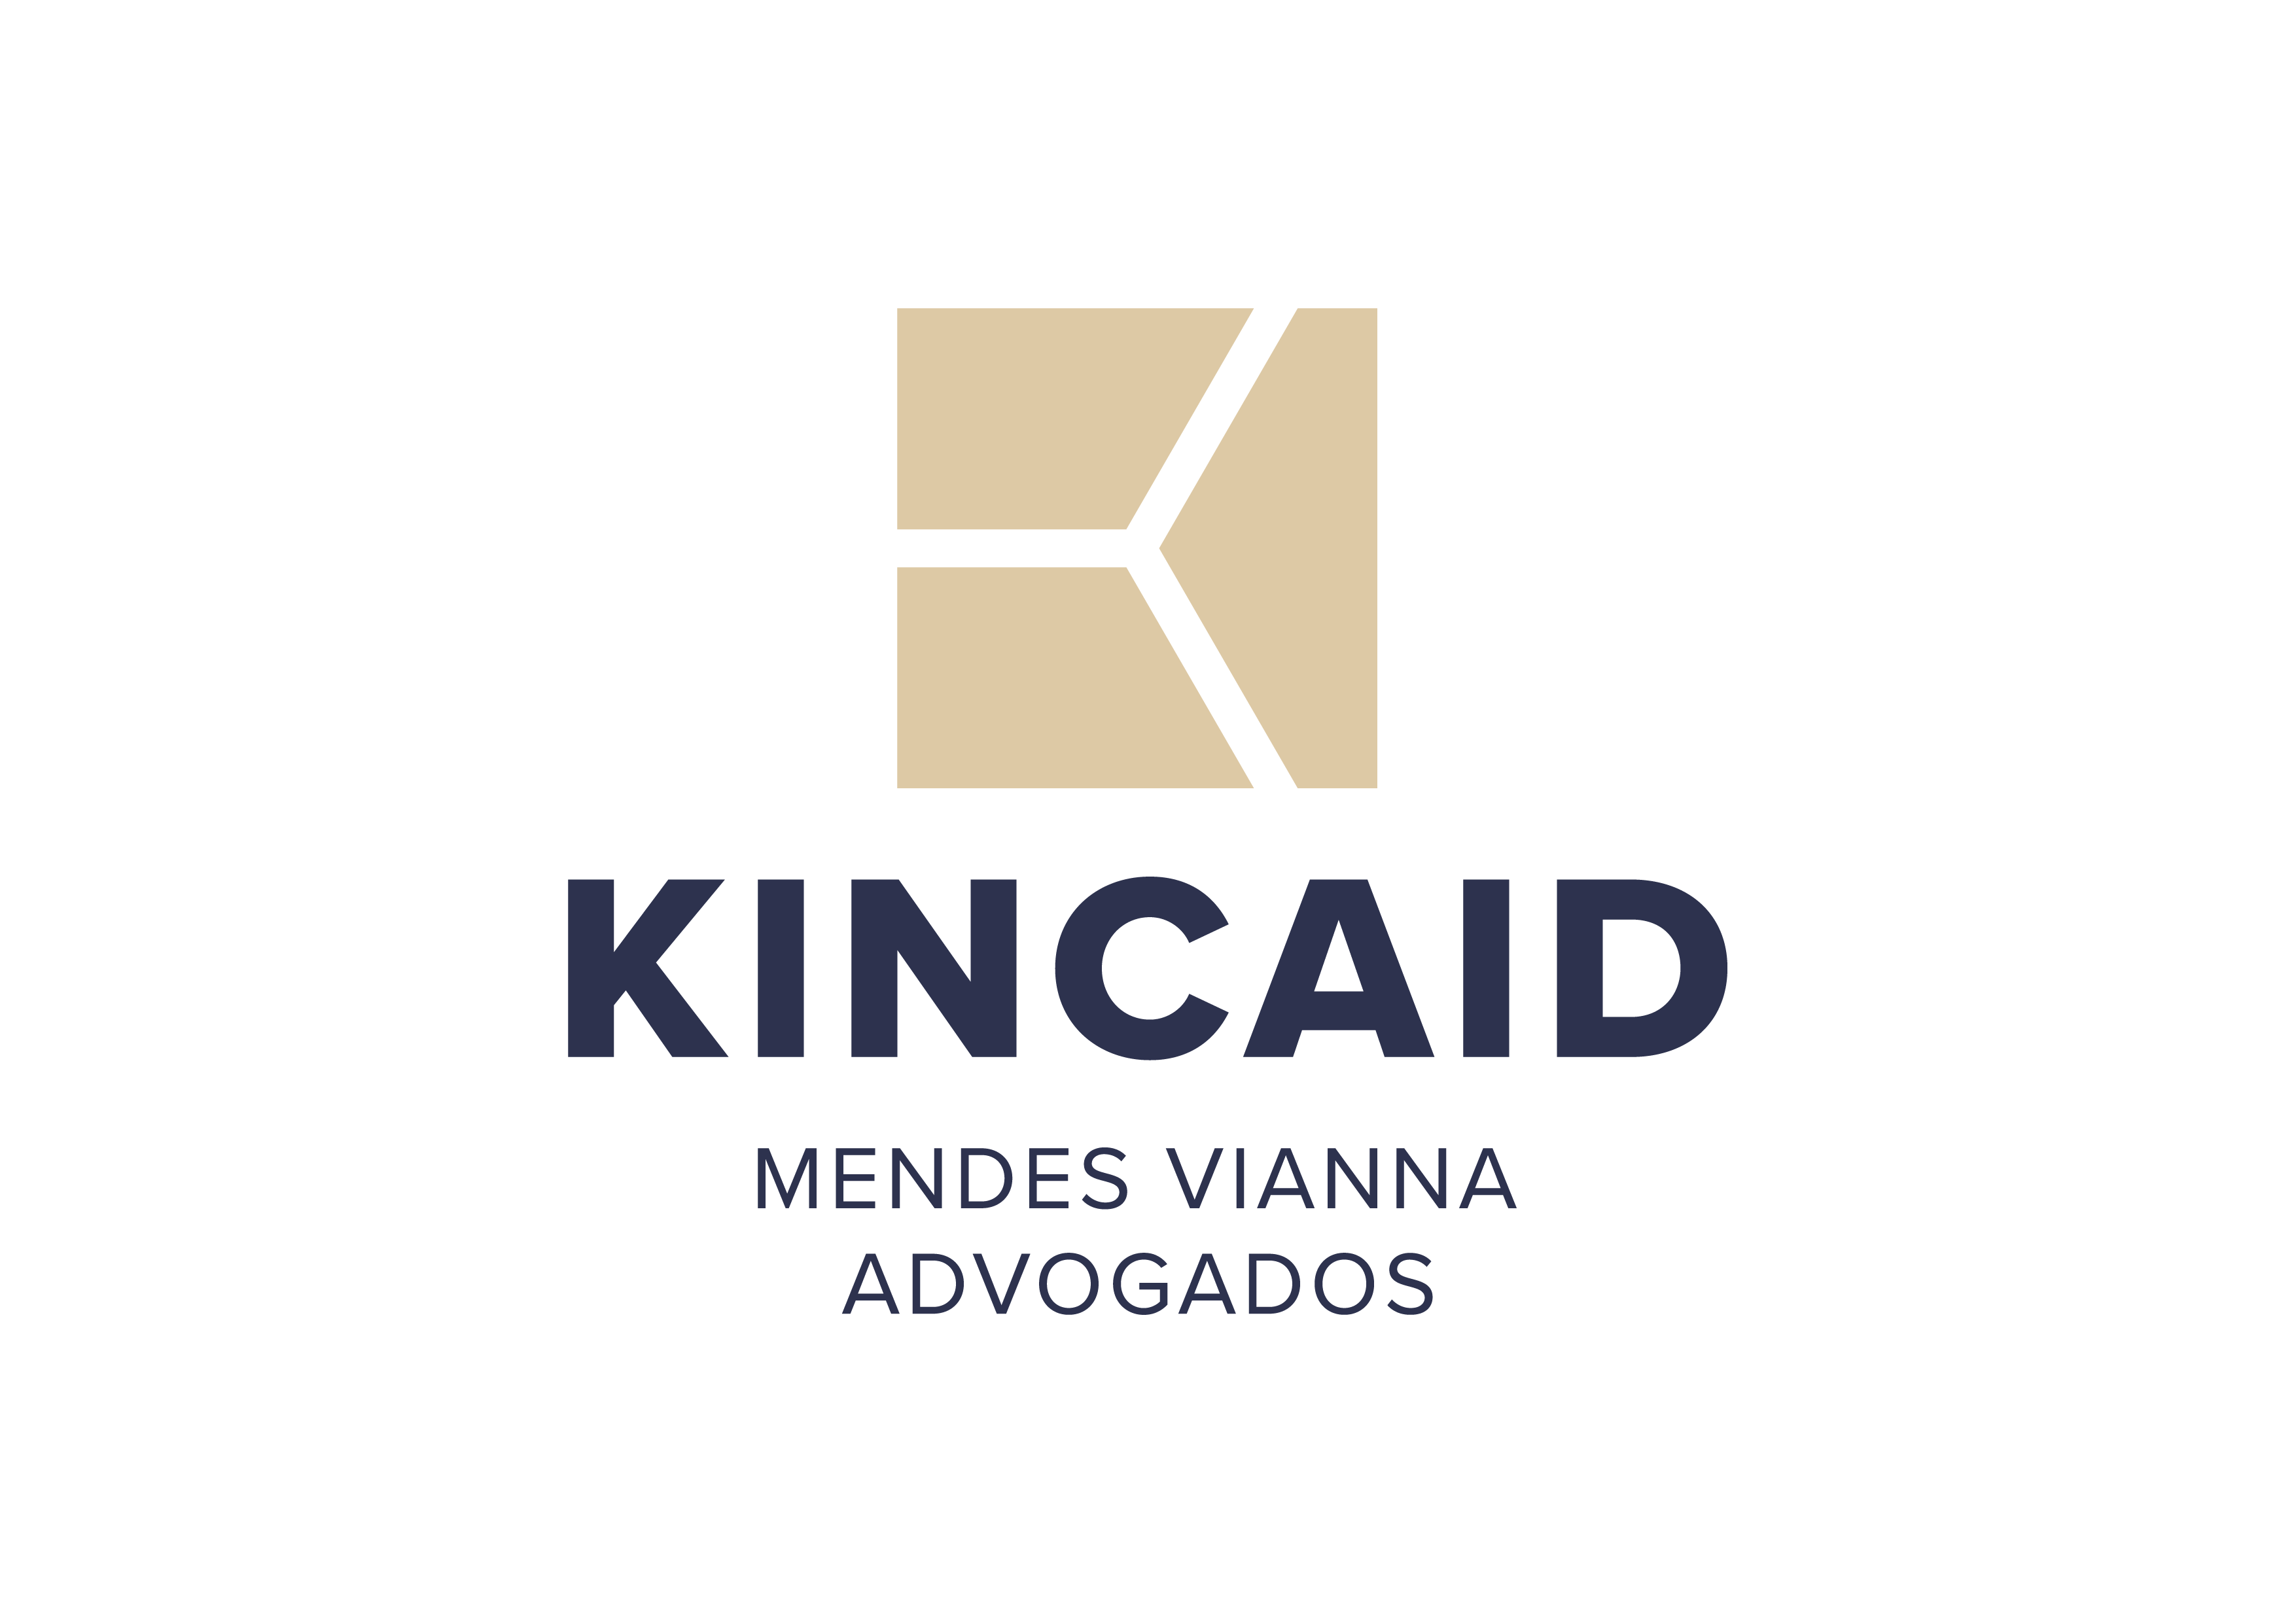 Kincaid-Logo-Descritivo-Vertical-Positivo-RGB